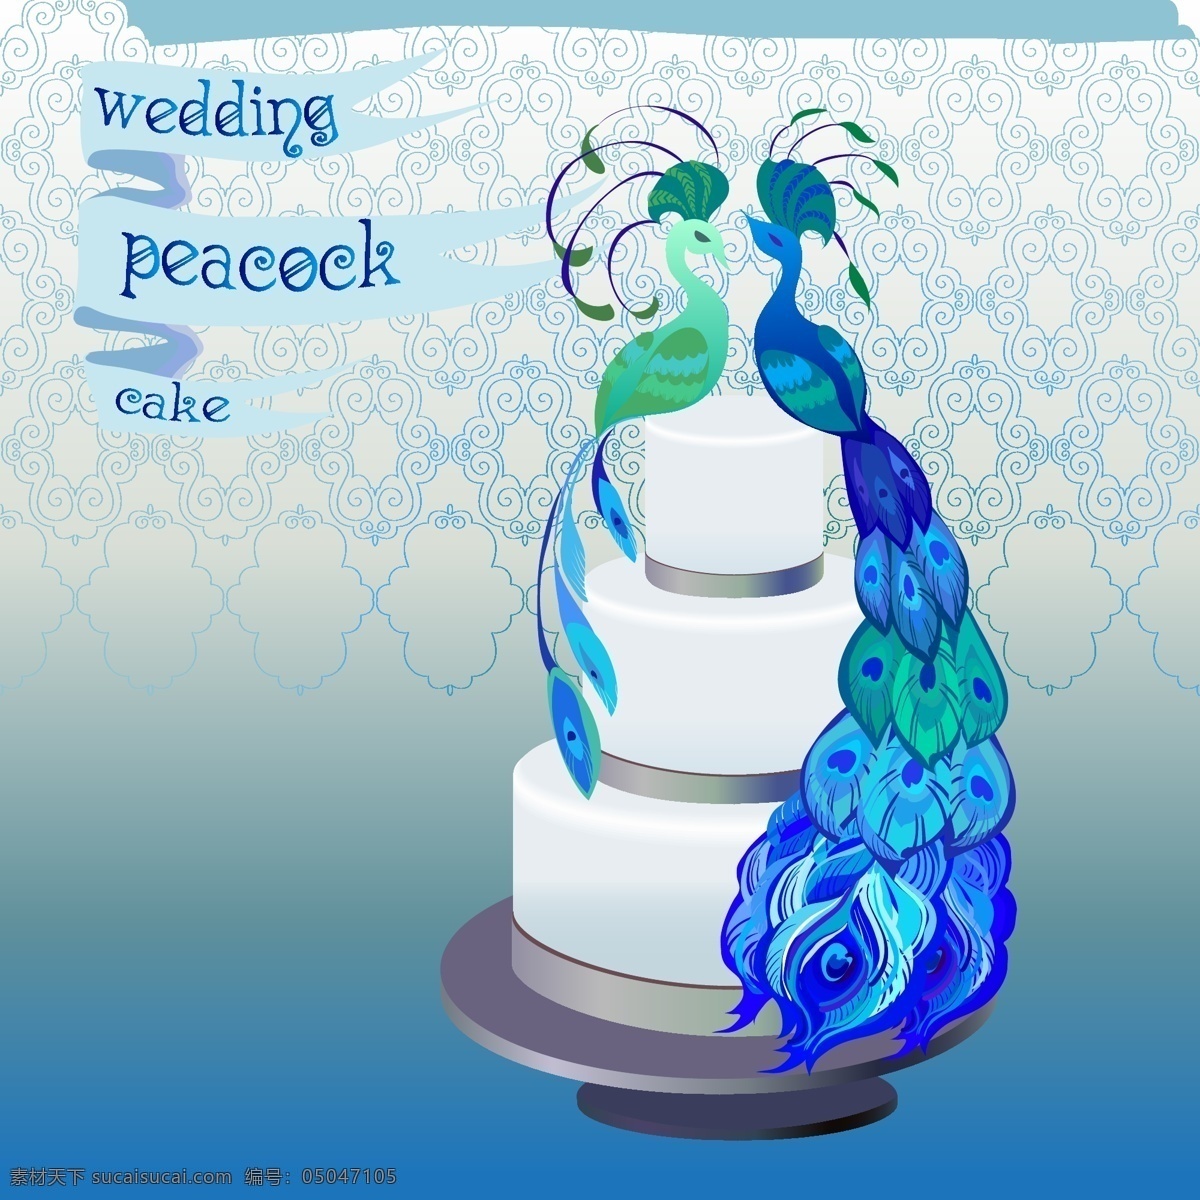 孔雀 蛋糕 邀请函 蓝色 花环 婚礼 矢量 高清图片